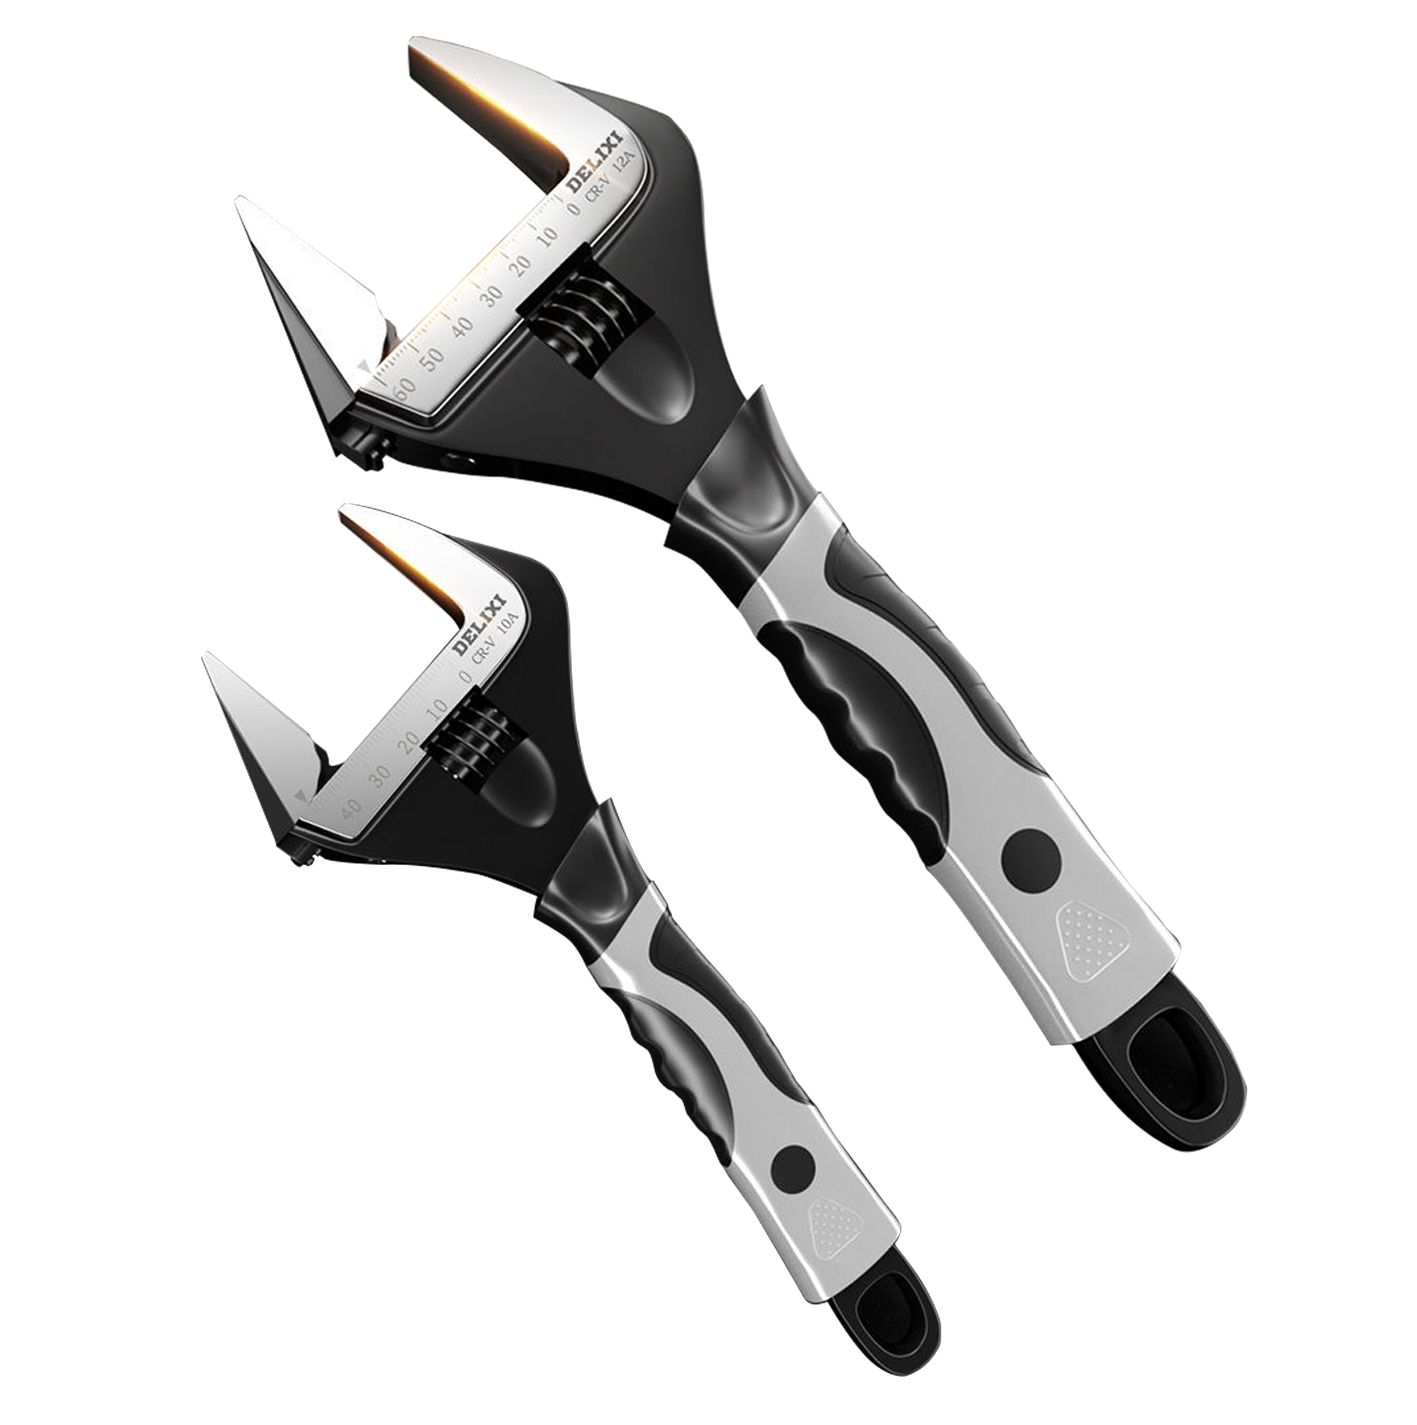 DELIXI adjustable wrench